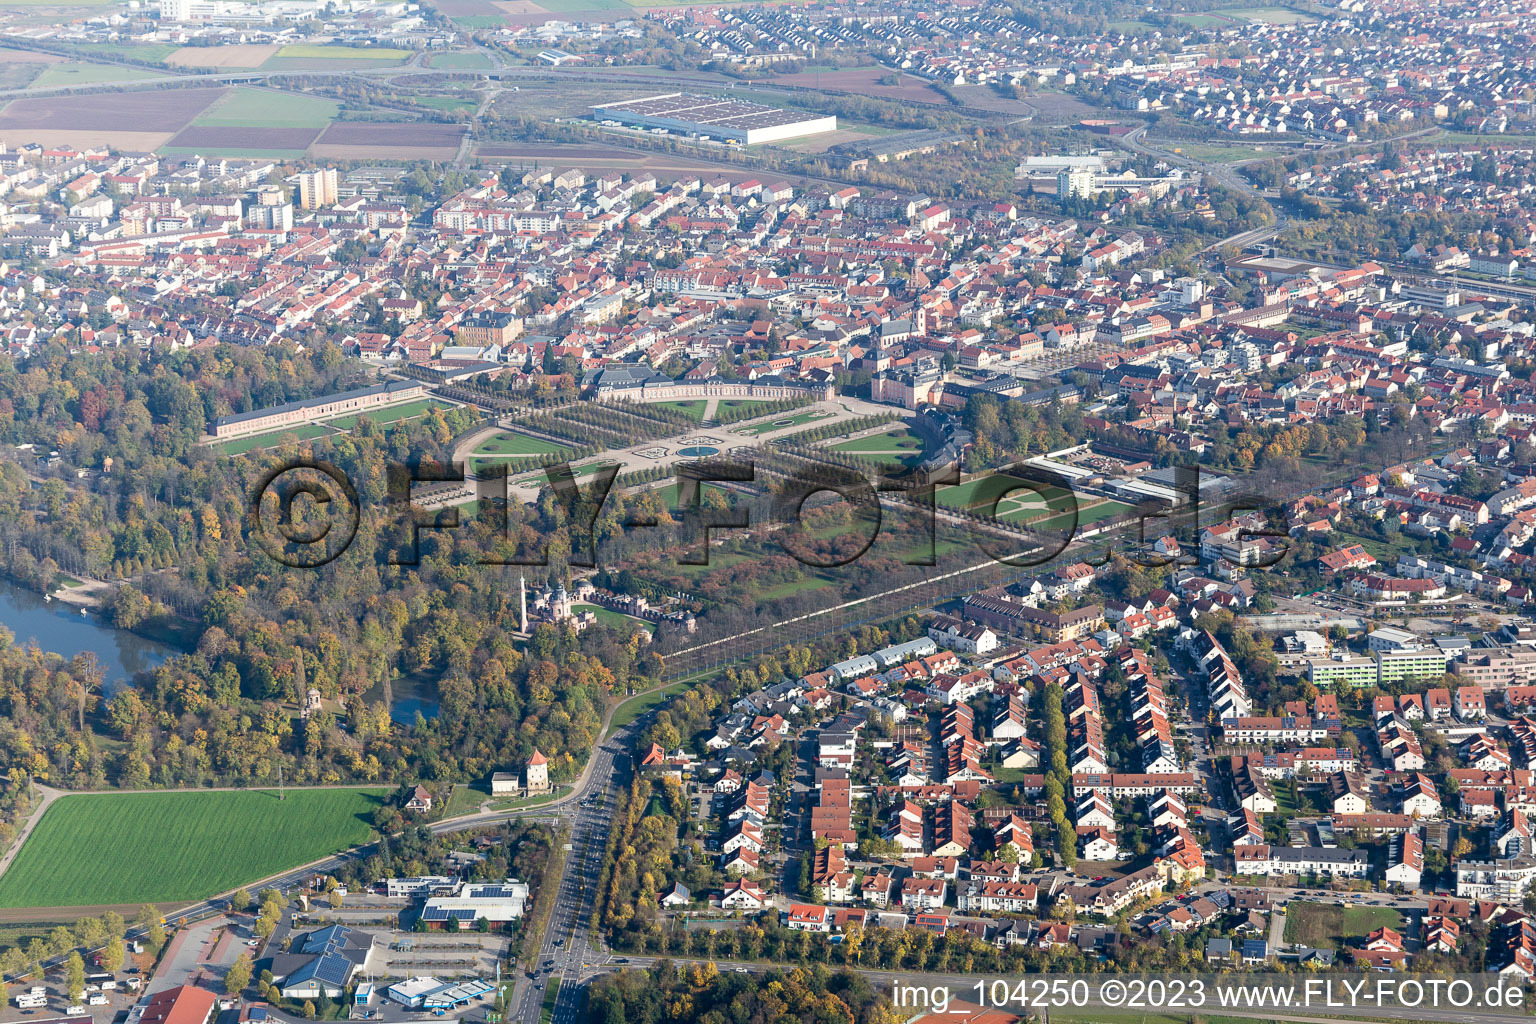 Schwetzingen im Bundesland Baden-Württemberg, Deutschland von der Drohne aus gesehen